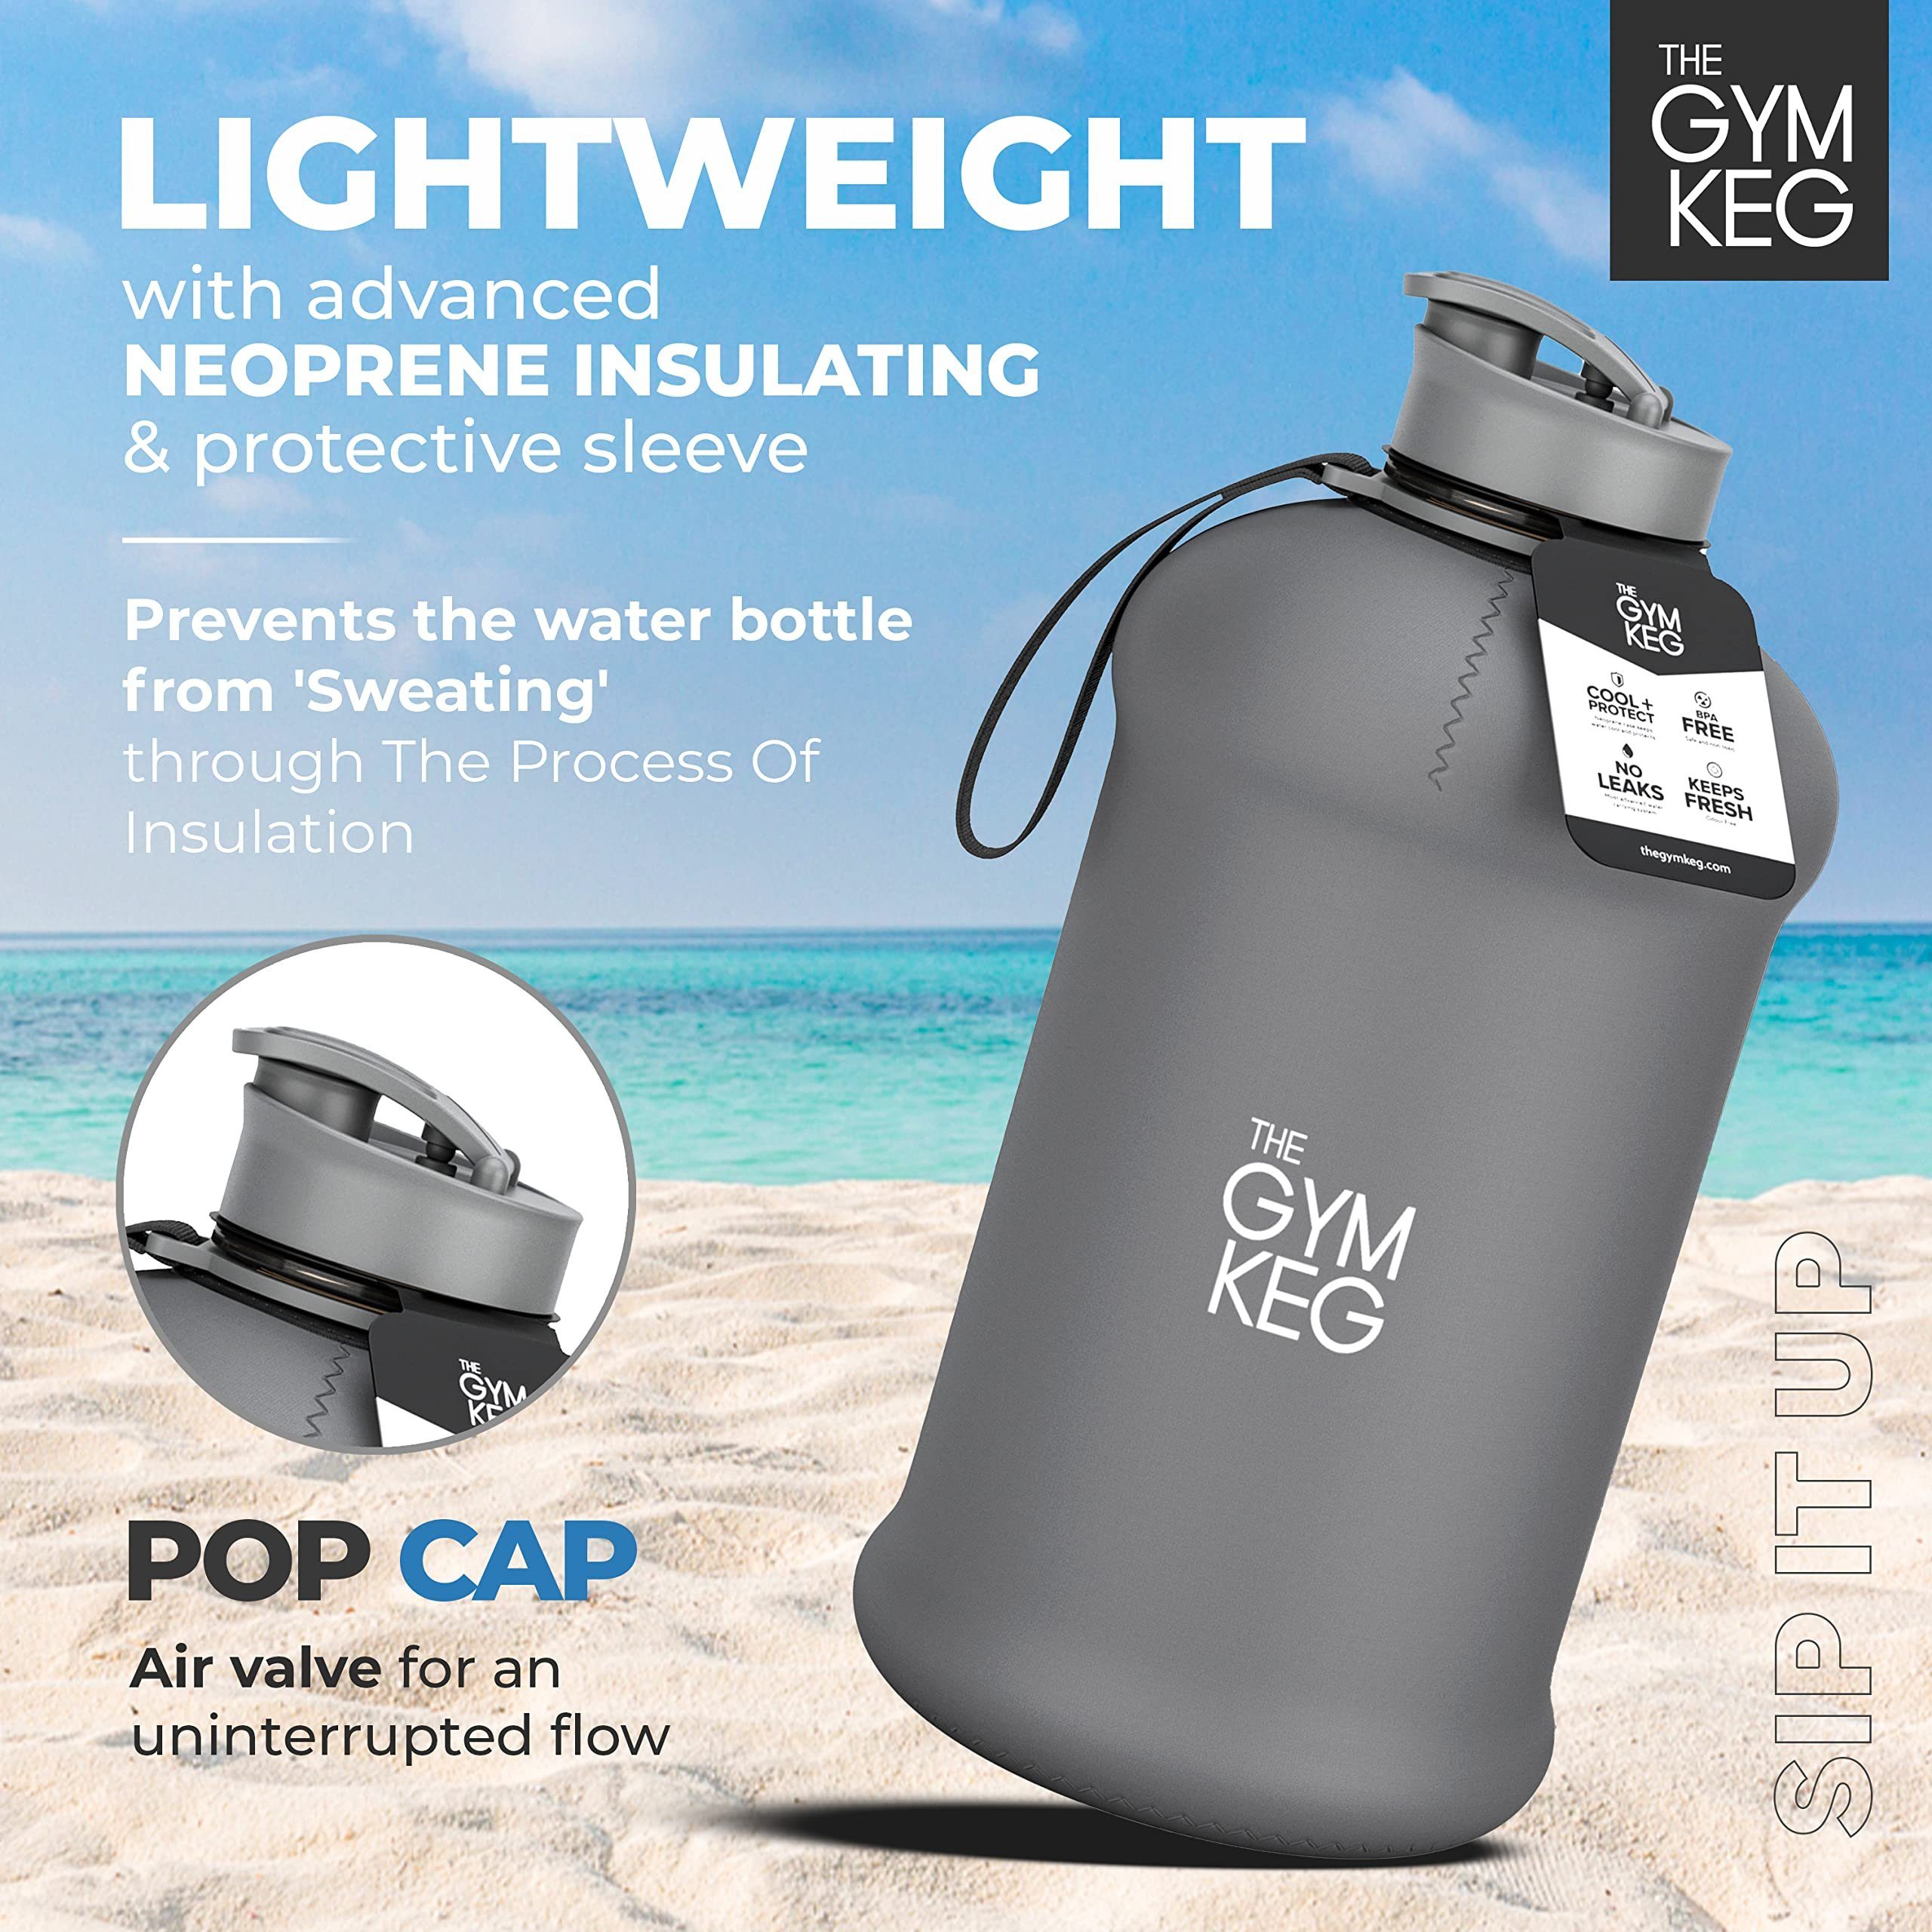 The Gym und Wiederverwendbar, Gym Sleeve Trinkflasche mit Neoprene Griff, Keg 2.2L Nardo 2.2 Grey Trinkflasche Liter